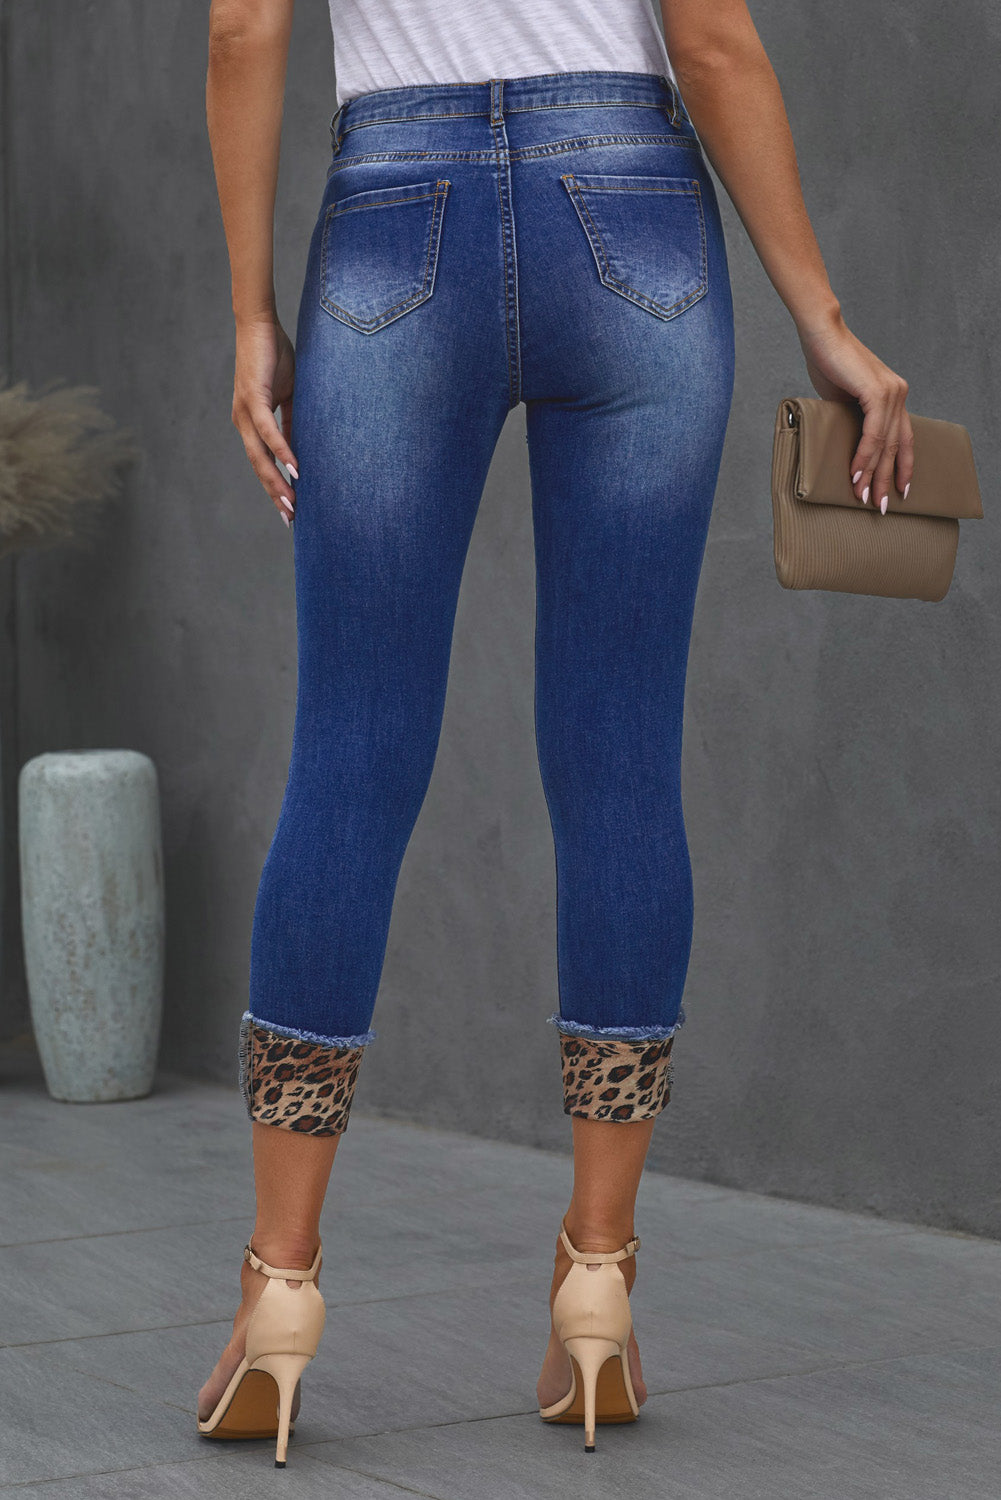 Jeans skinny blu con toppe leopardate invecchiate